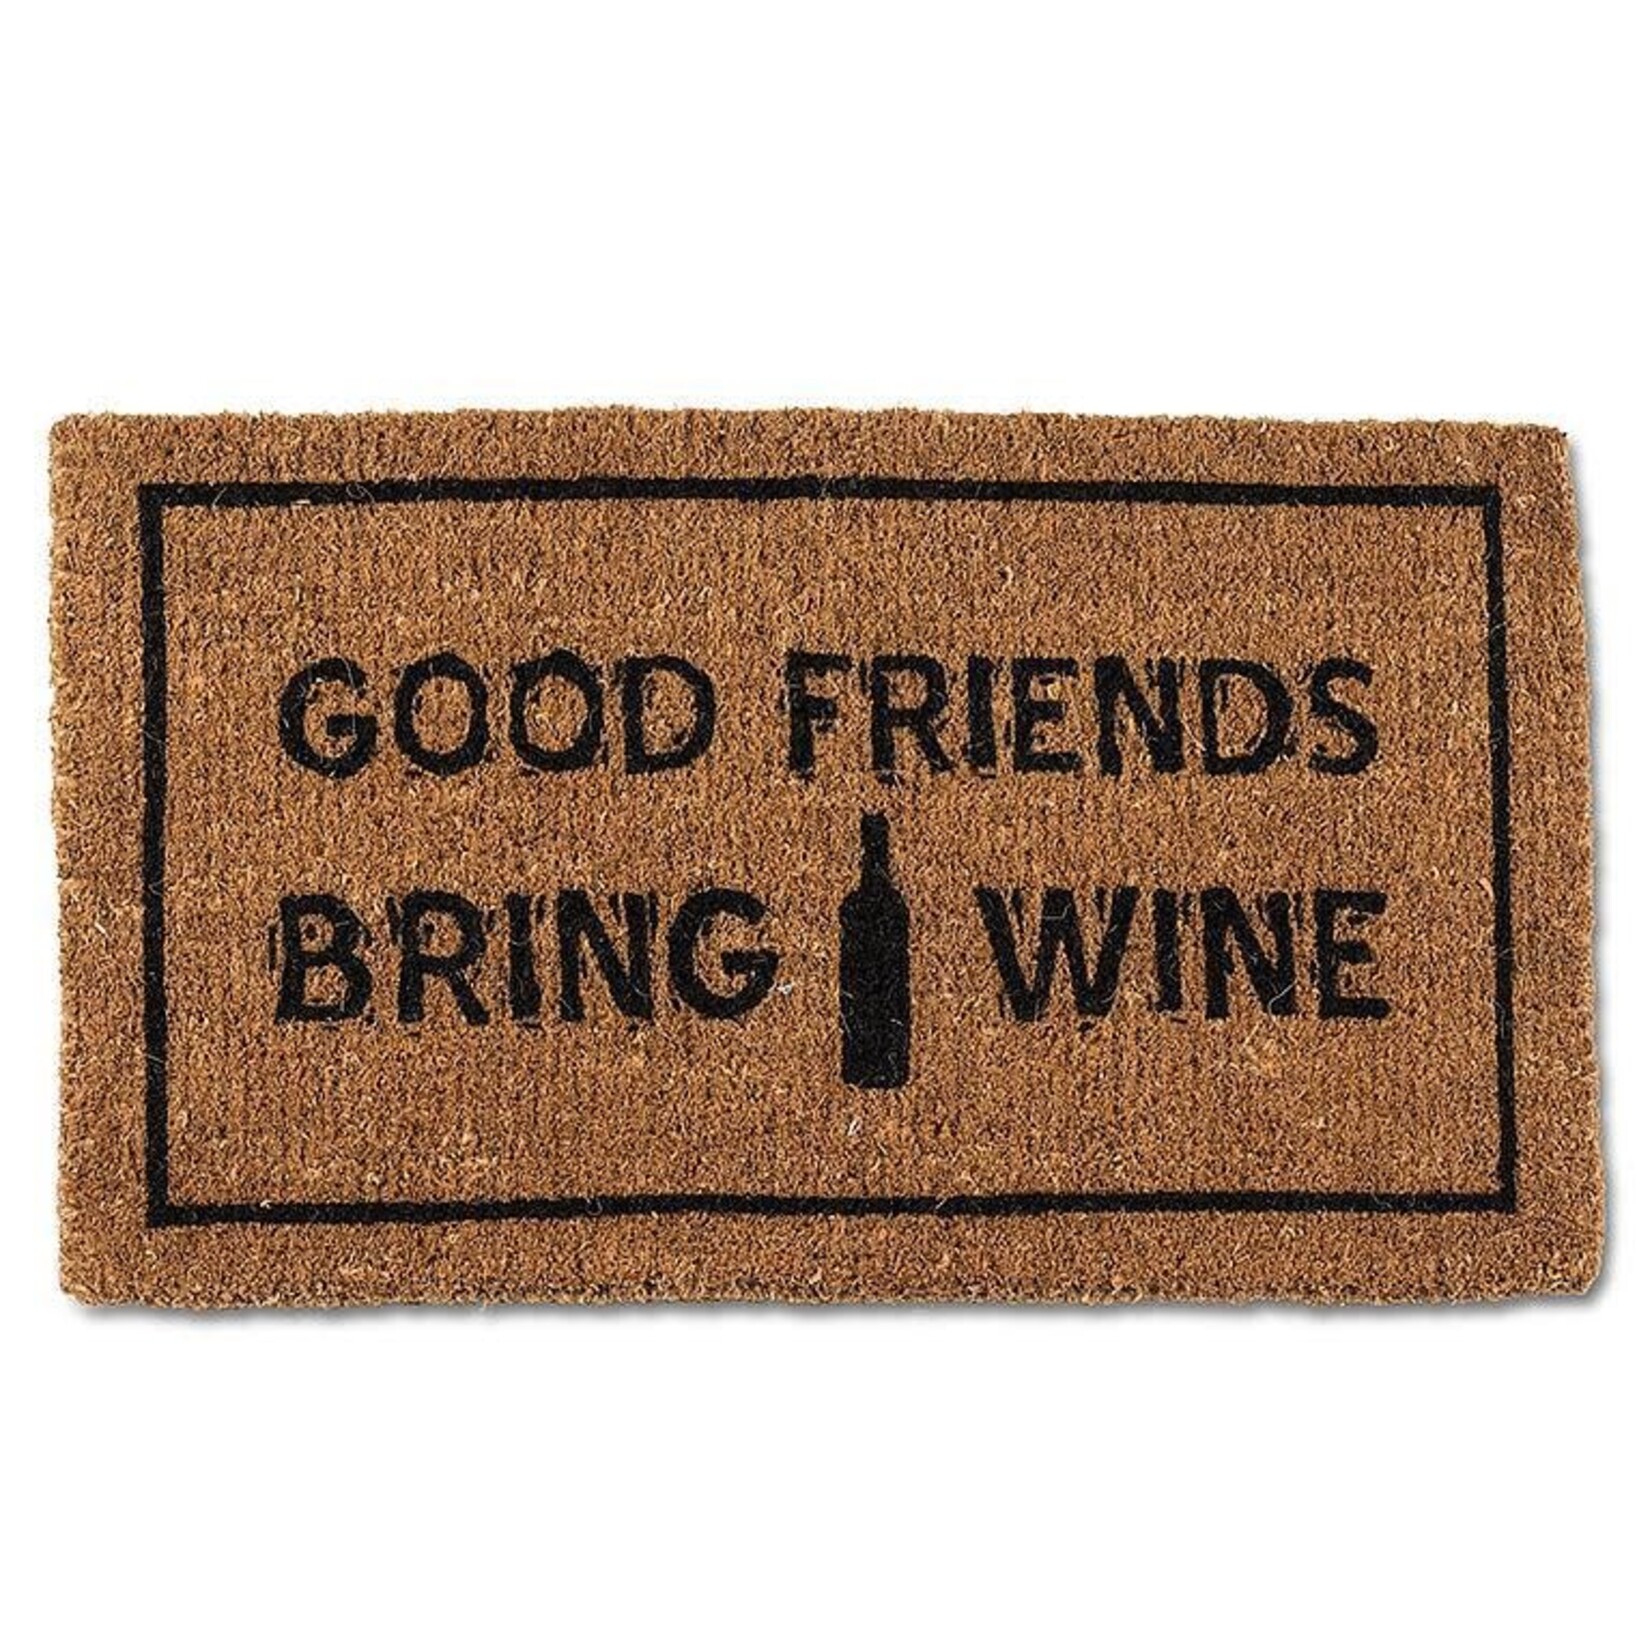 Friends & Wine Doormat